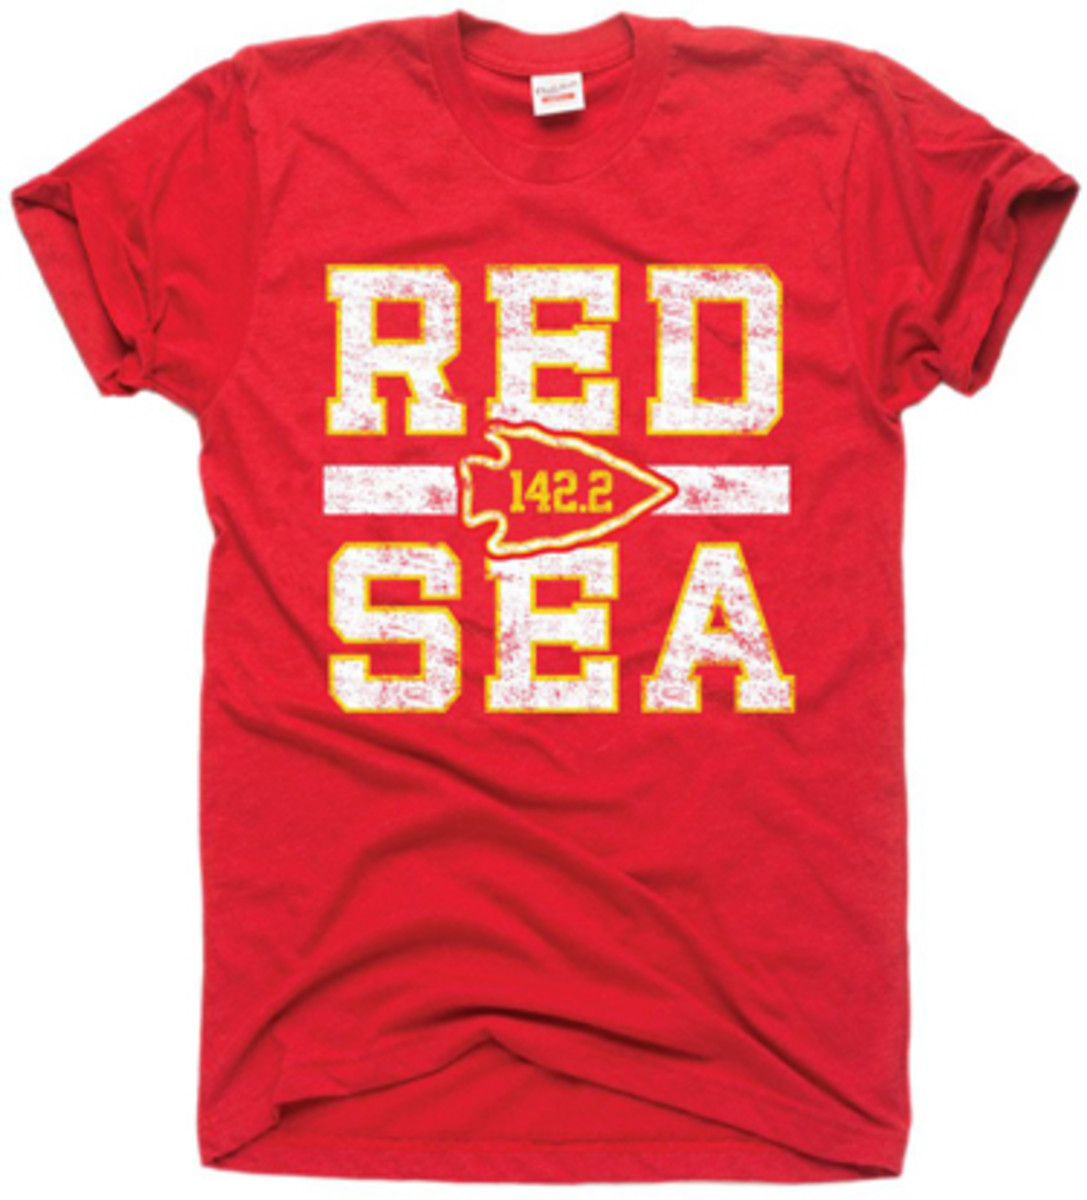 mmqb-red-seas.jpg